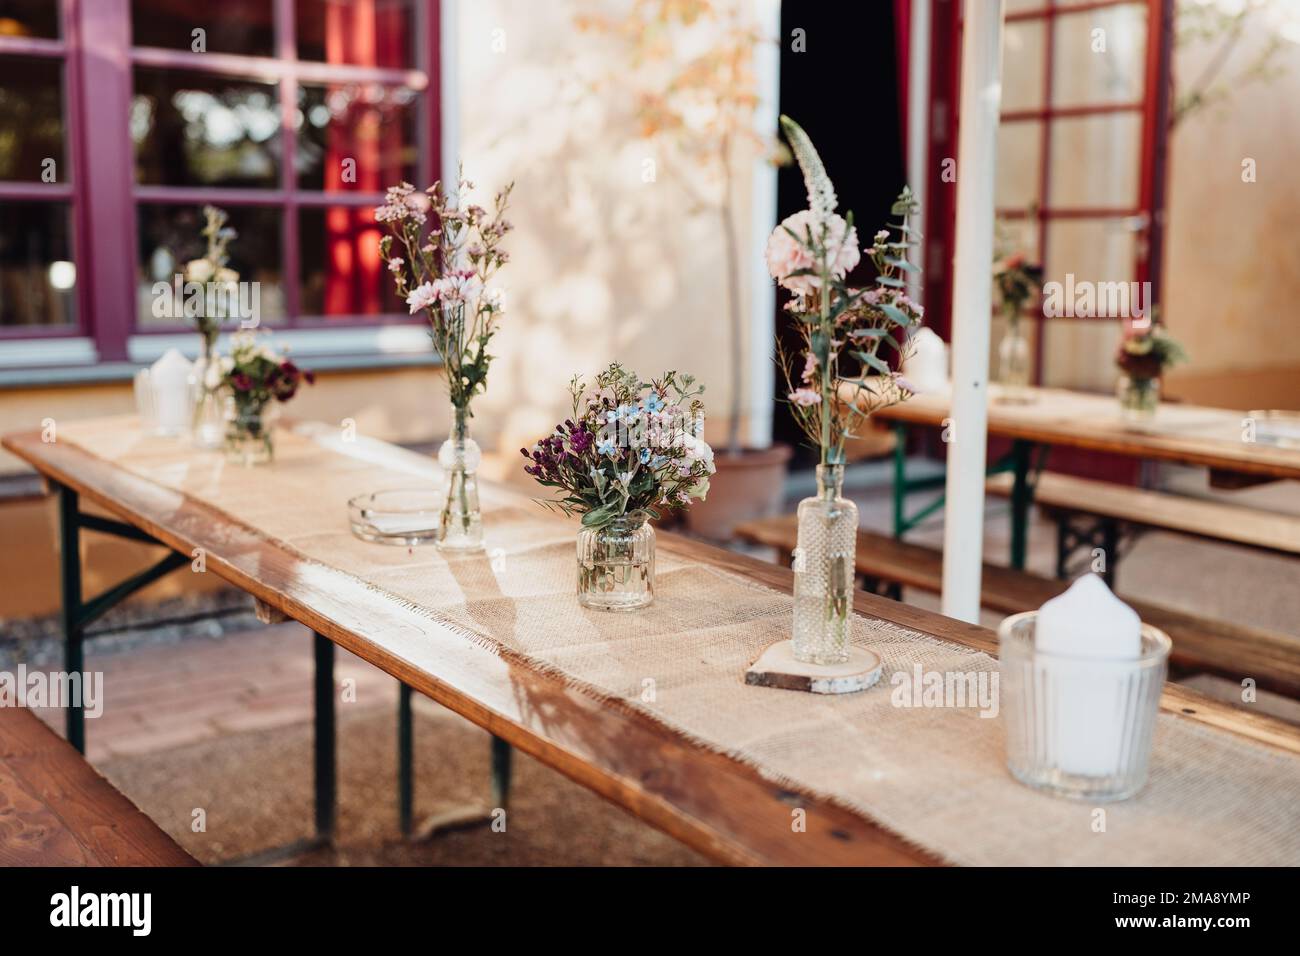 Bunte Blumen und Kerzen auf gedecktem Hochzeitstisch Stock Photo